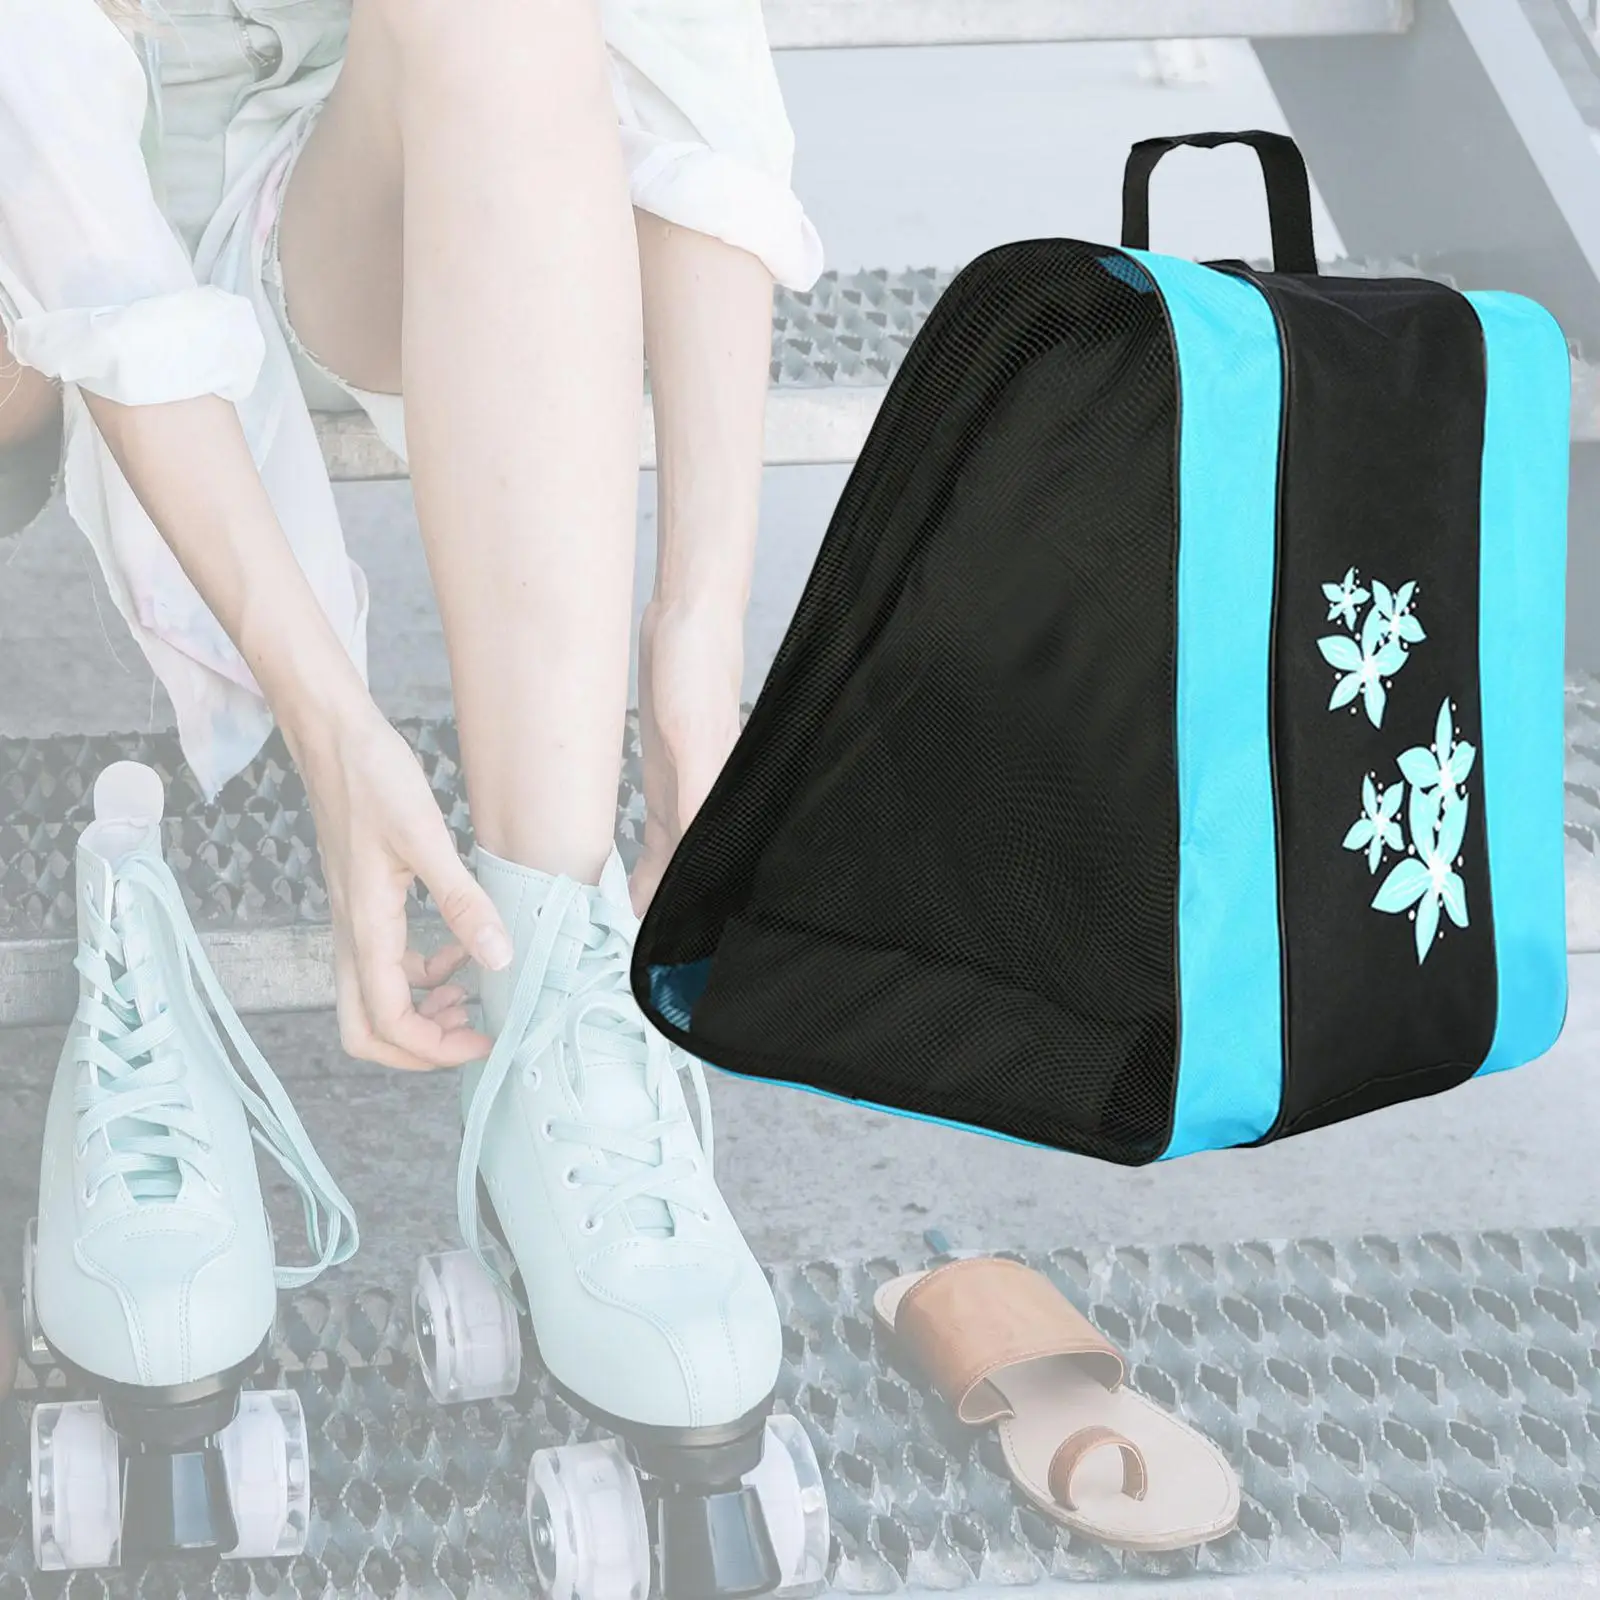 Portable Kids Roller Skate Bag 3Layers Breathable Adjustable Shoulder Strap